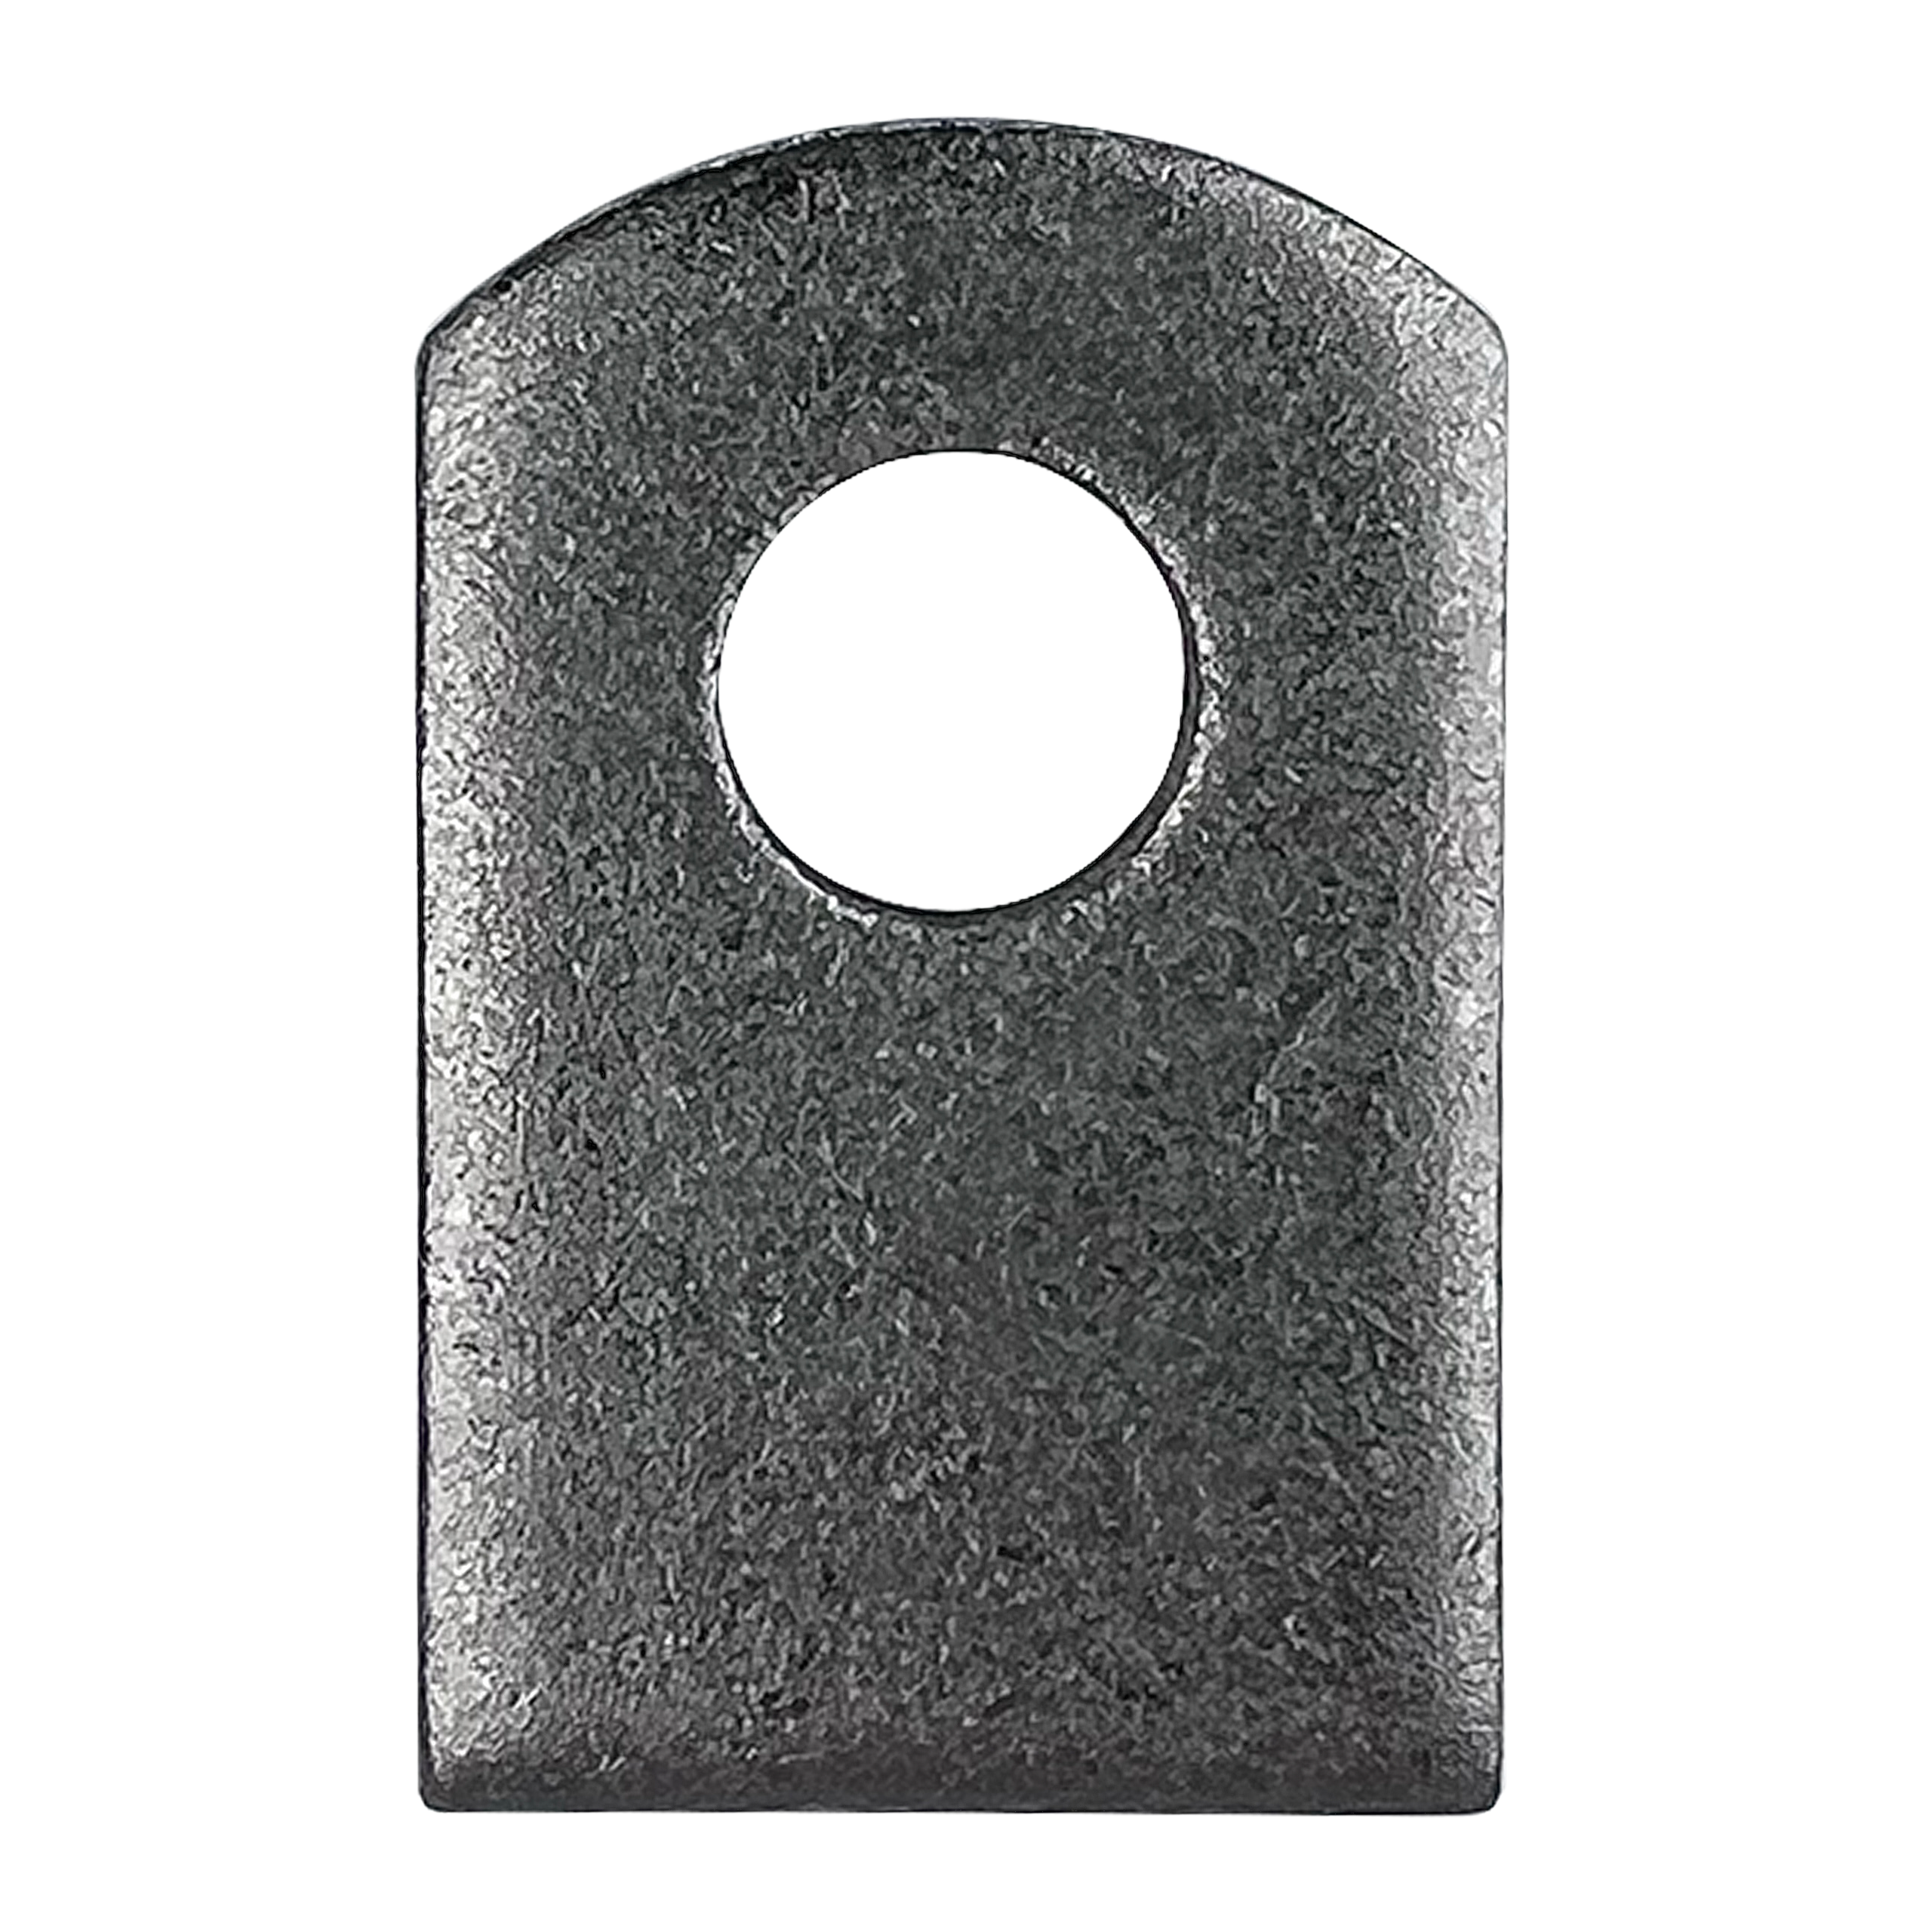 Welding Tabs Metal Weld On Steel Tab 1” W, 1 .5” H , 3/8” Hole, 5mm 3/16” - Heavy Duty